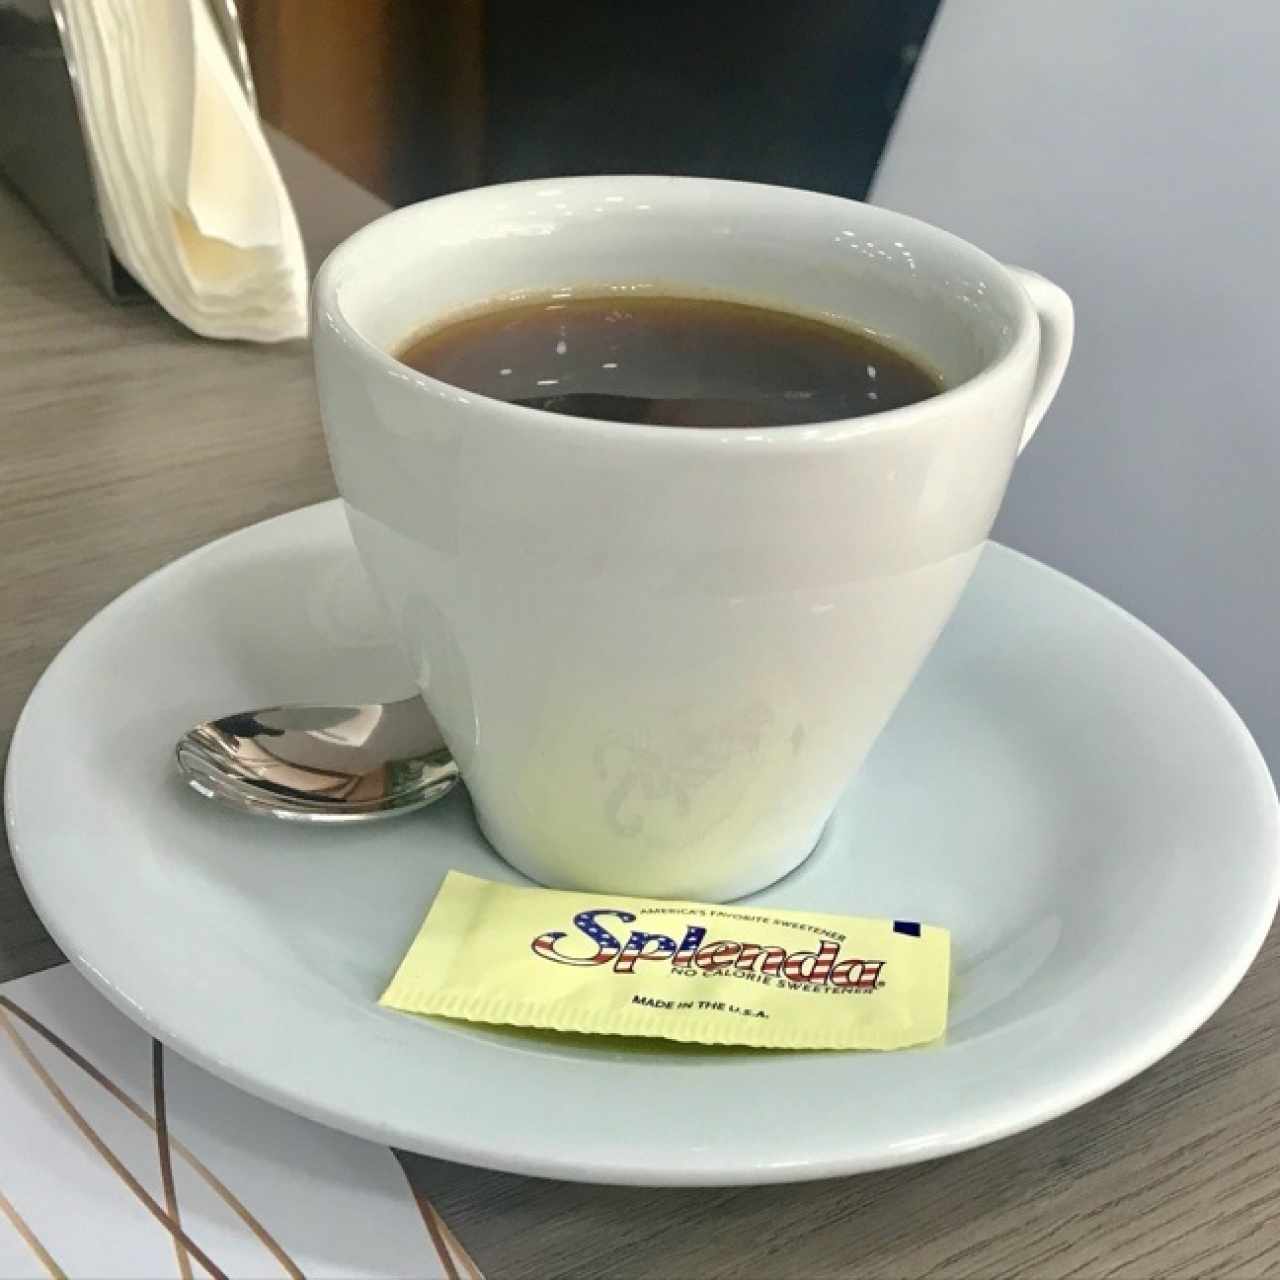 Delicioso café guayoyo